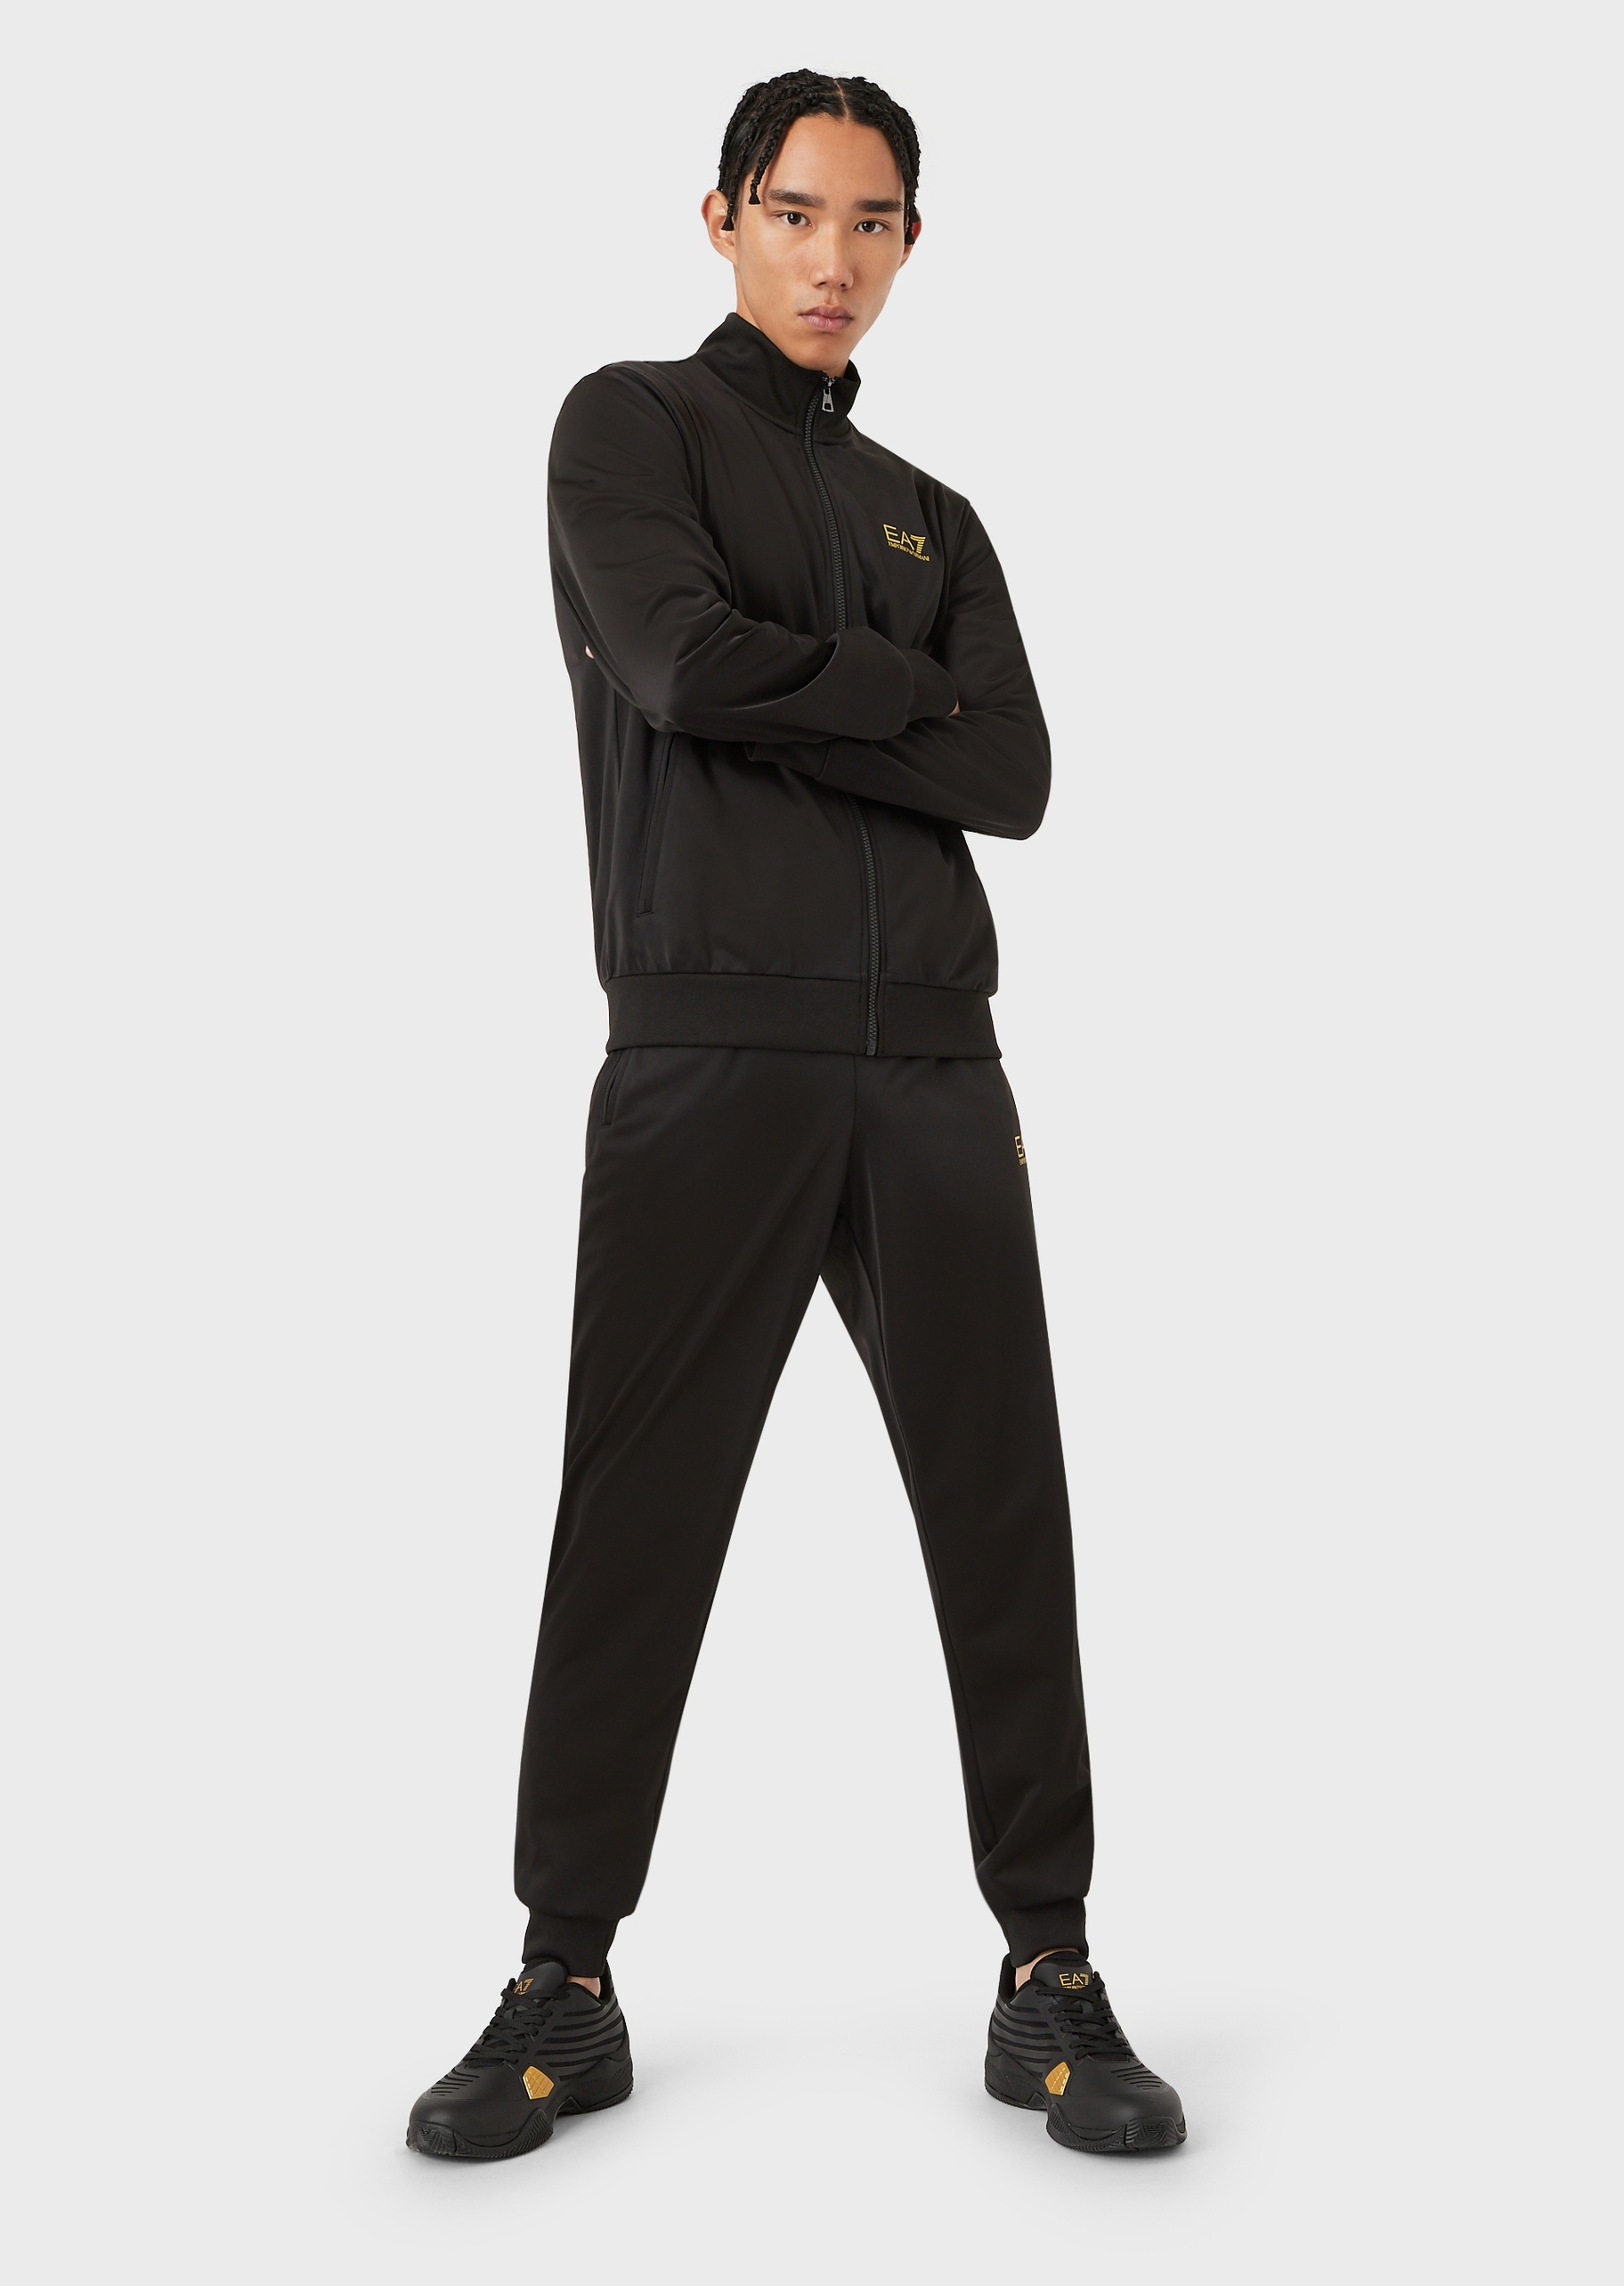 EA7 男士合身立领开衫束脚长裤健身训练运动套装